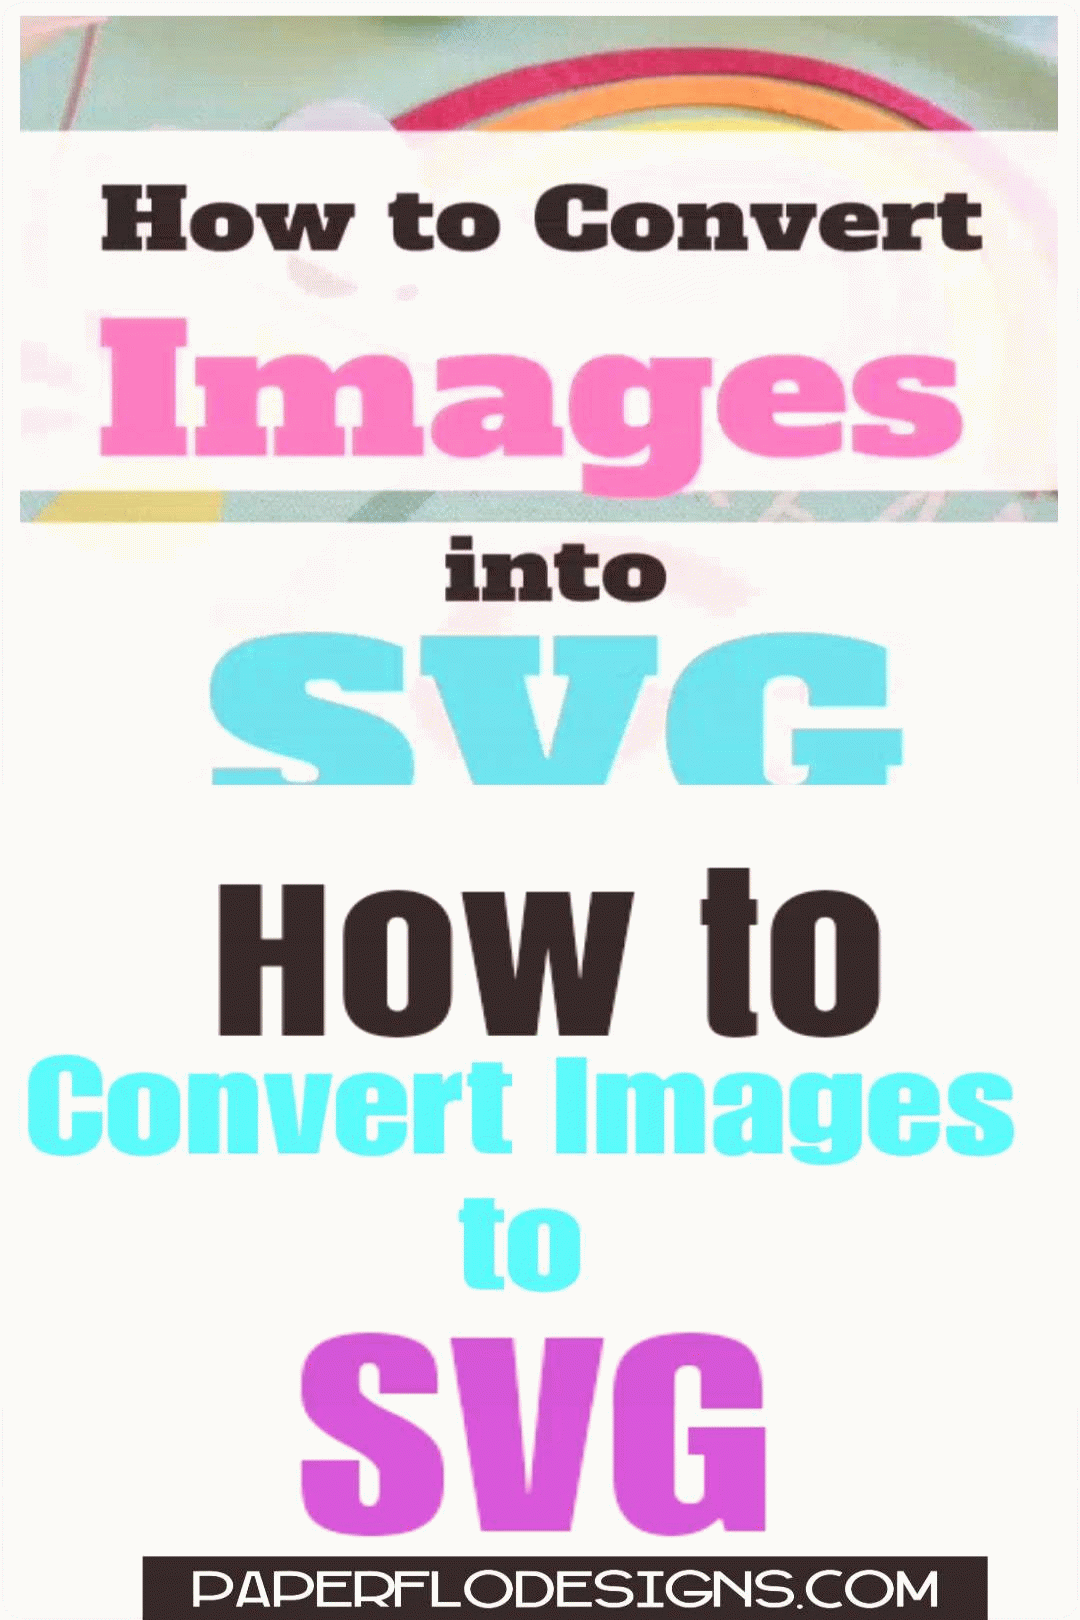 ¿Puedes convertir imágenes a Svg?